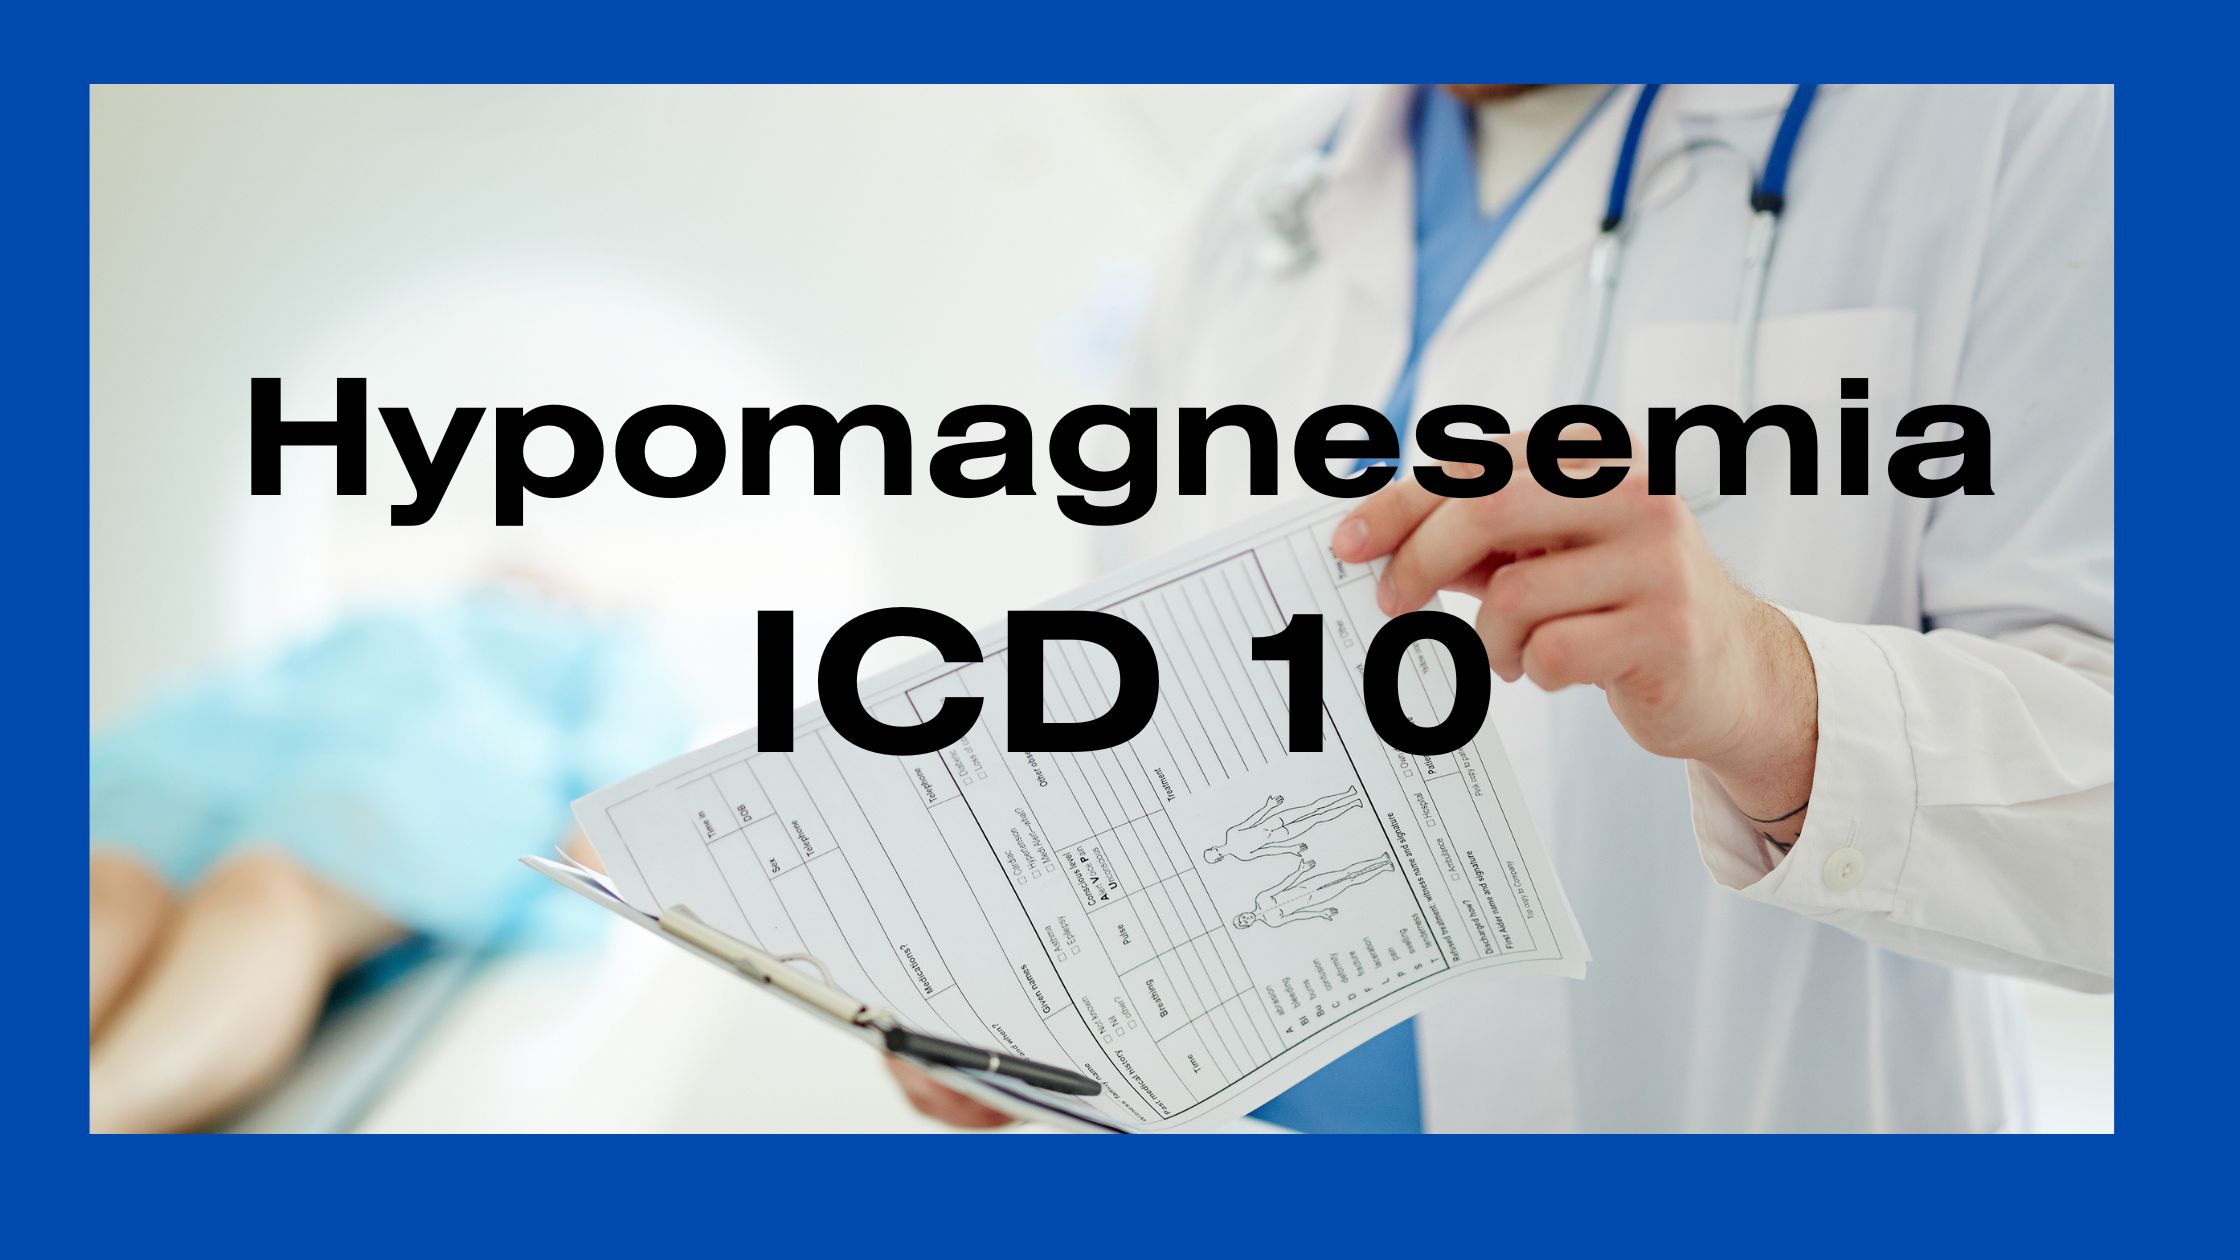 Hypomagnesemia ICD 10 E83.42